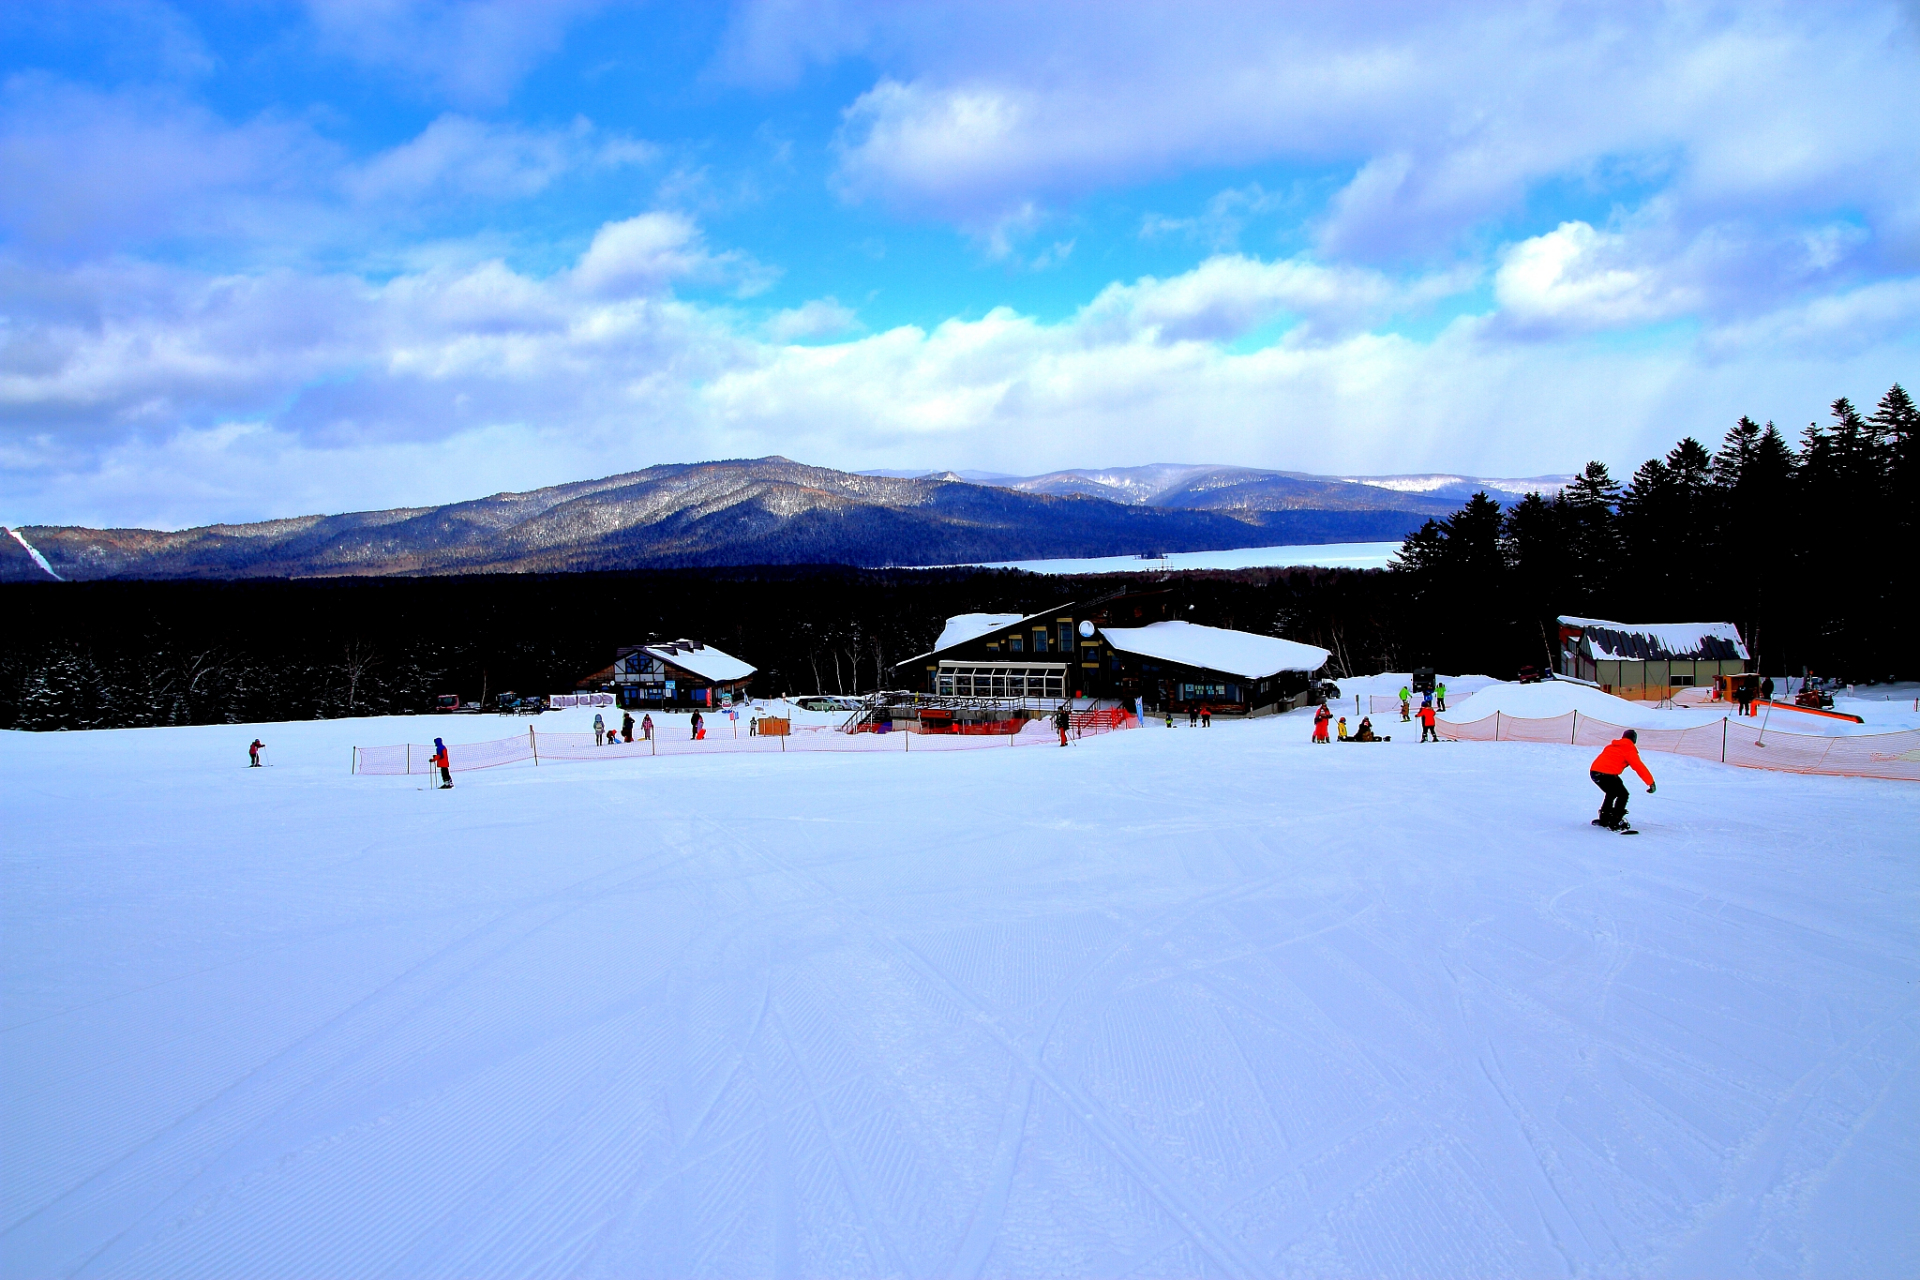 冬日,亚布力滑雪旅游度假区,中国顶级滑雪胜地,如约而至!